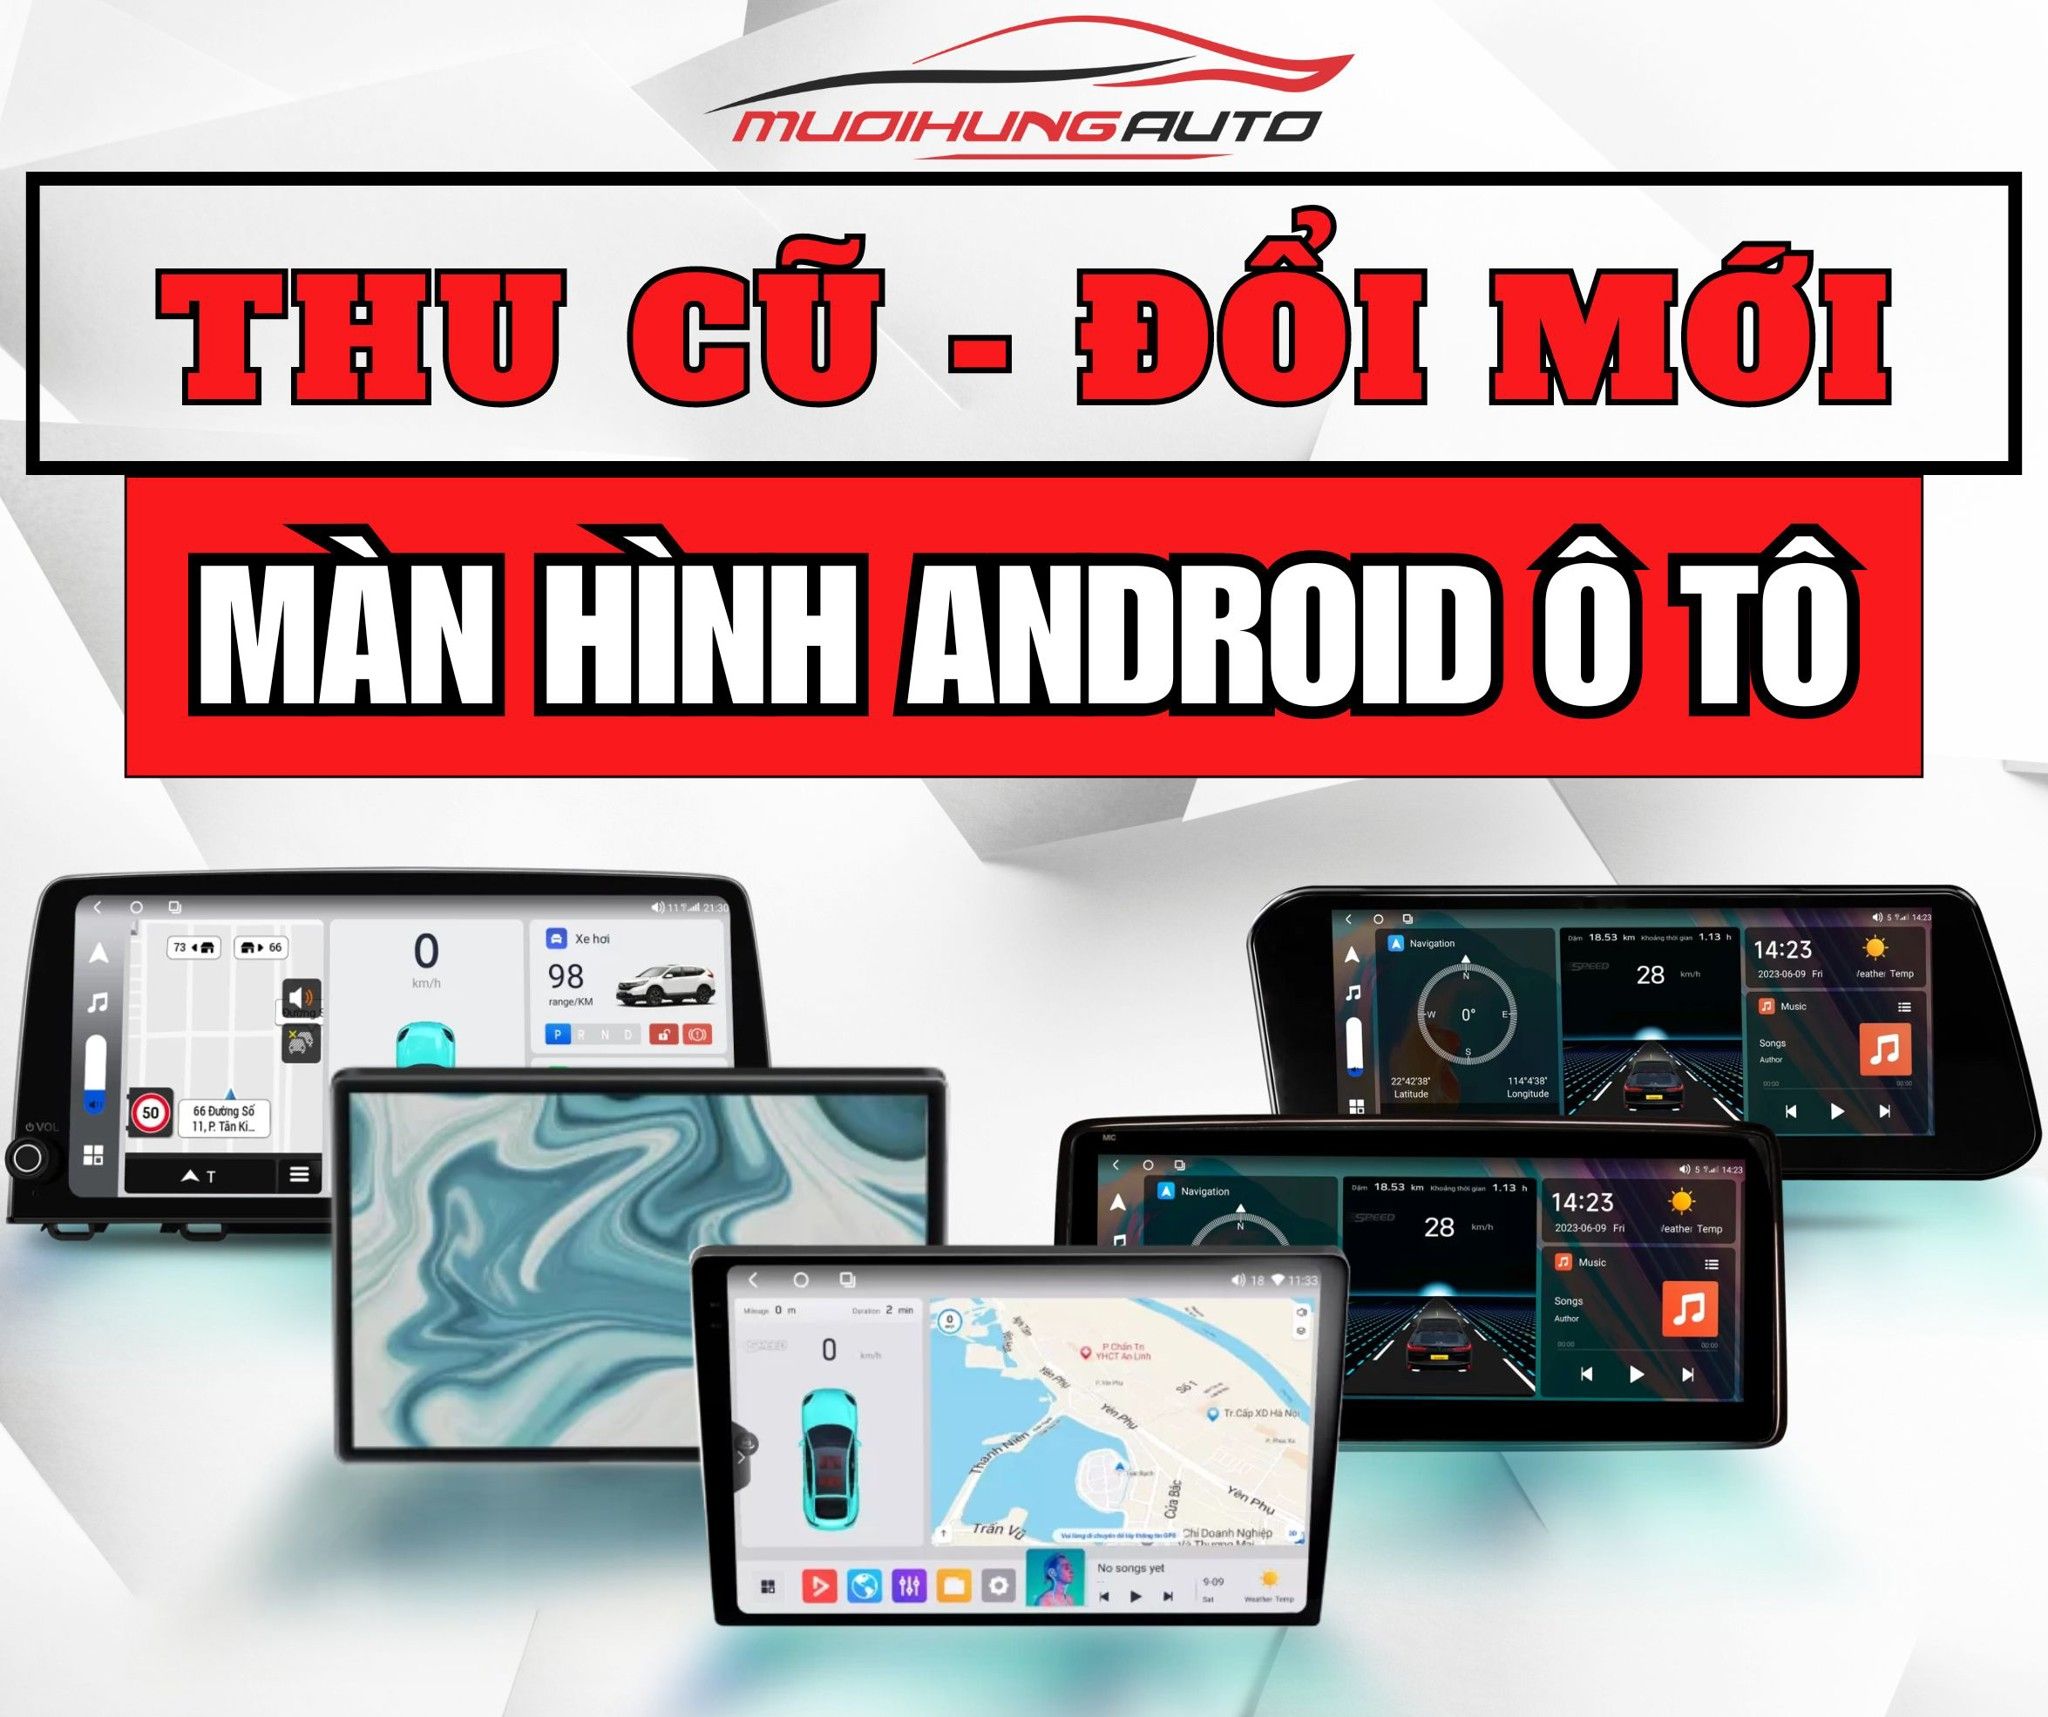 Mười Hùng Auto - Thu cũ đổi mới màn hình android ô tô